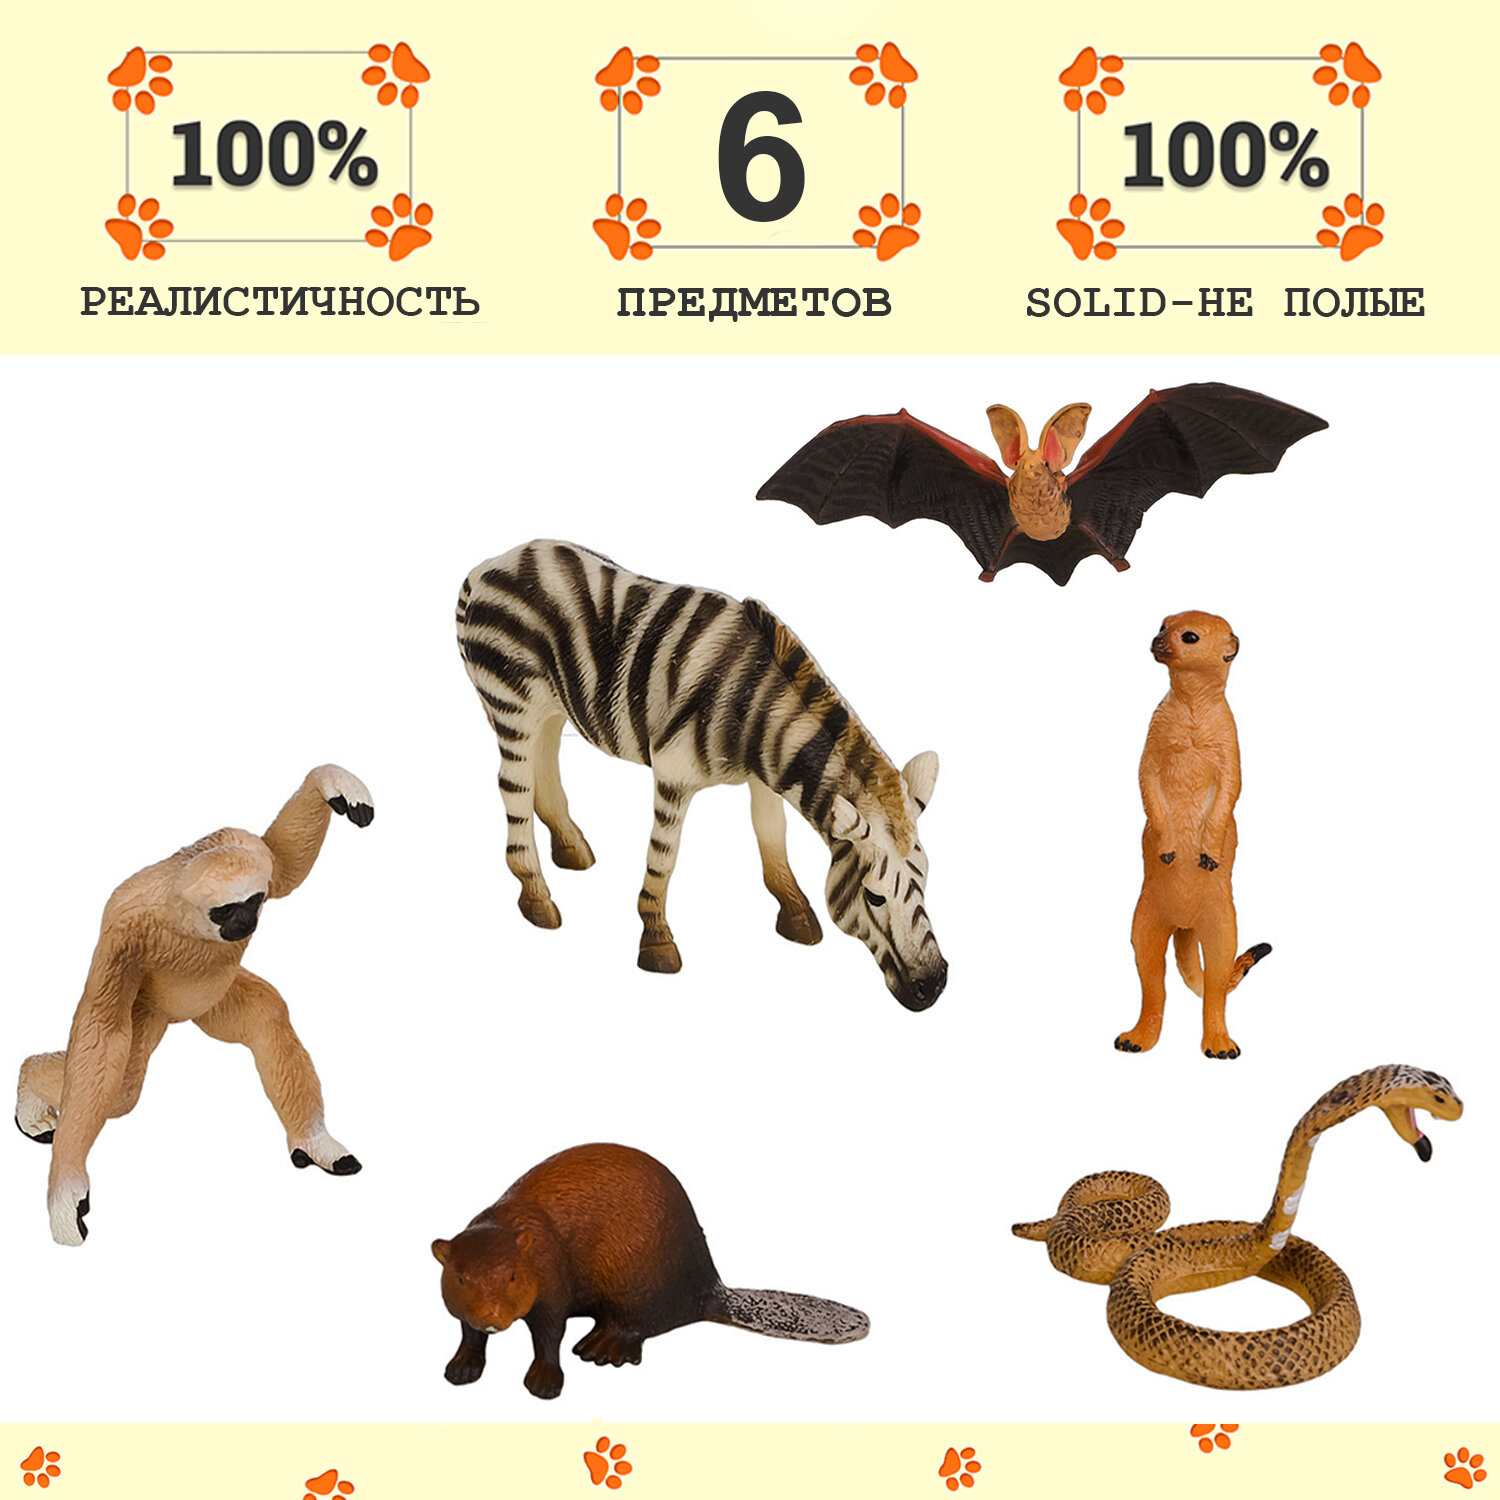 Набор фигурок животных серии "Мир диких животных": зебра, летучая мышь, змея, сурикат, бобер, обезьяна (набор из 6 фигурок)